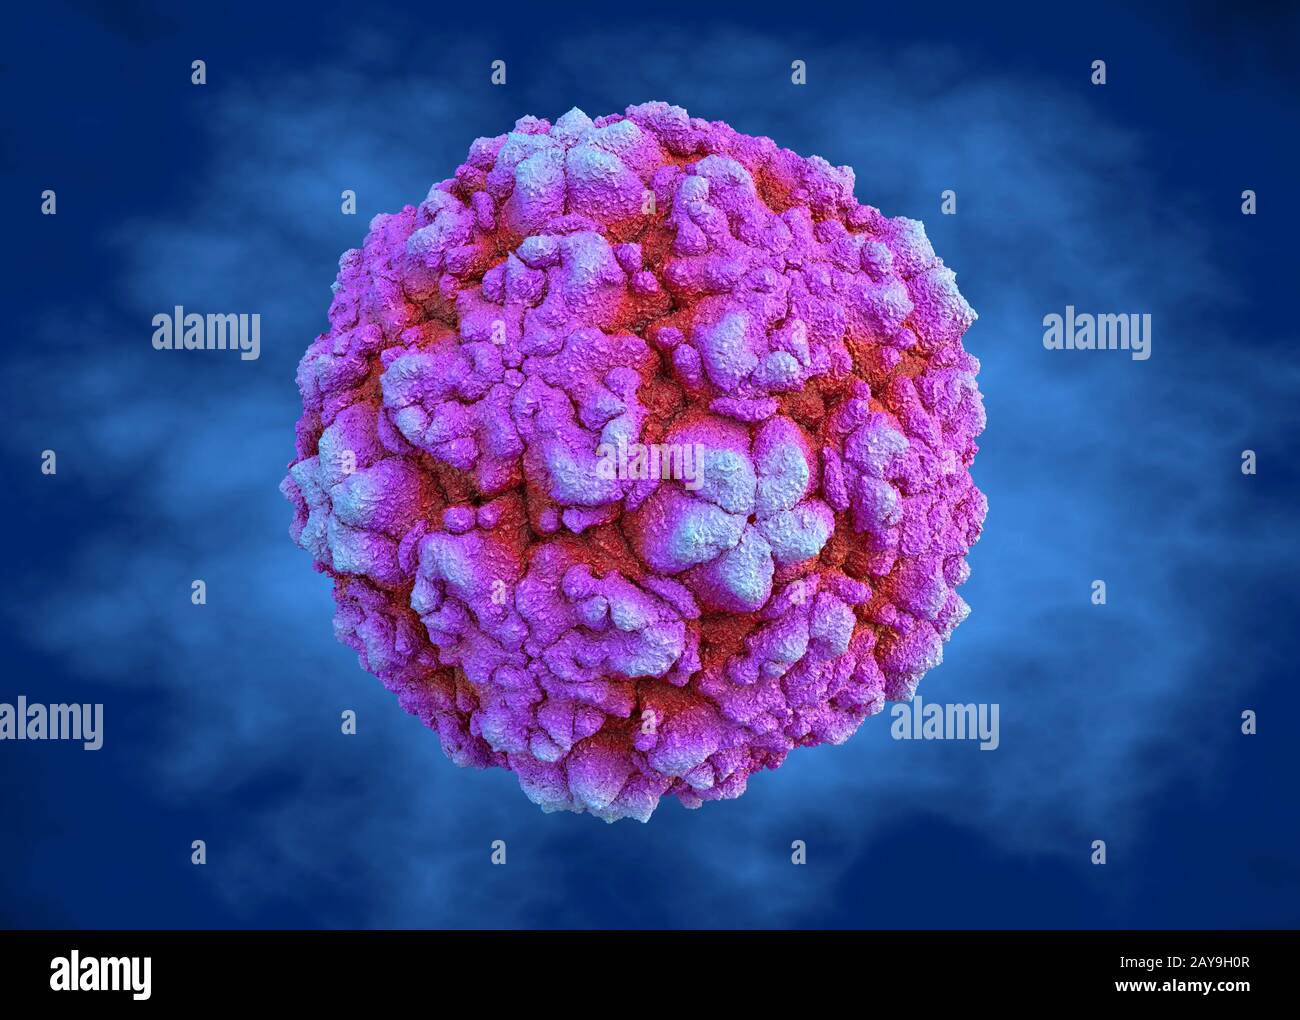 Rhinovirus, illustration Stock Photo